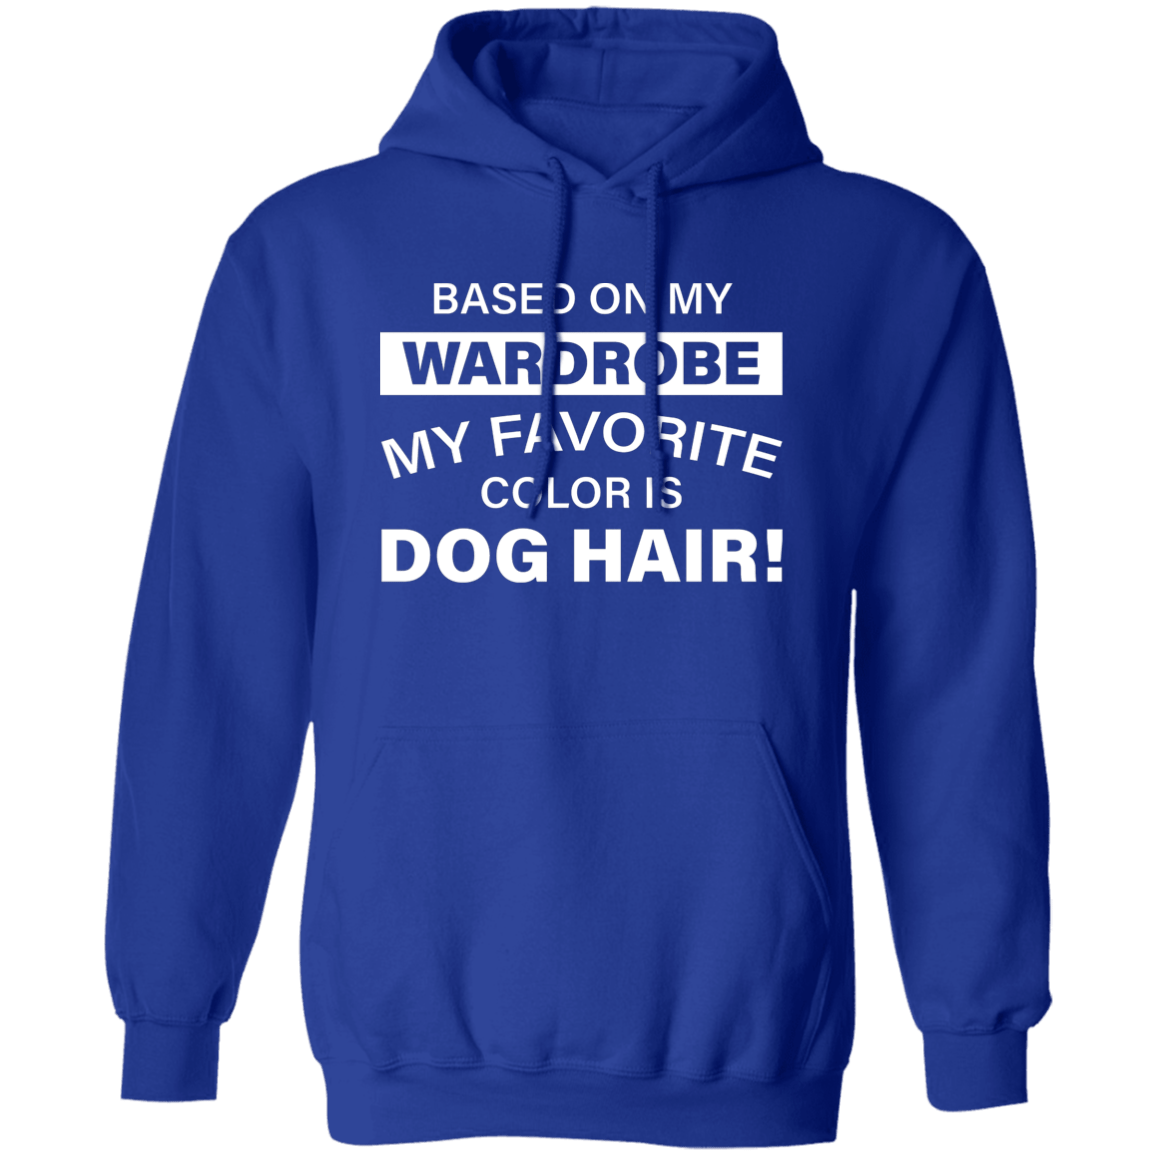 Favorite Color Dog Hair - Hoodie.